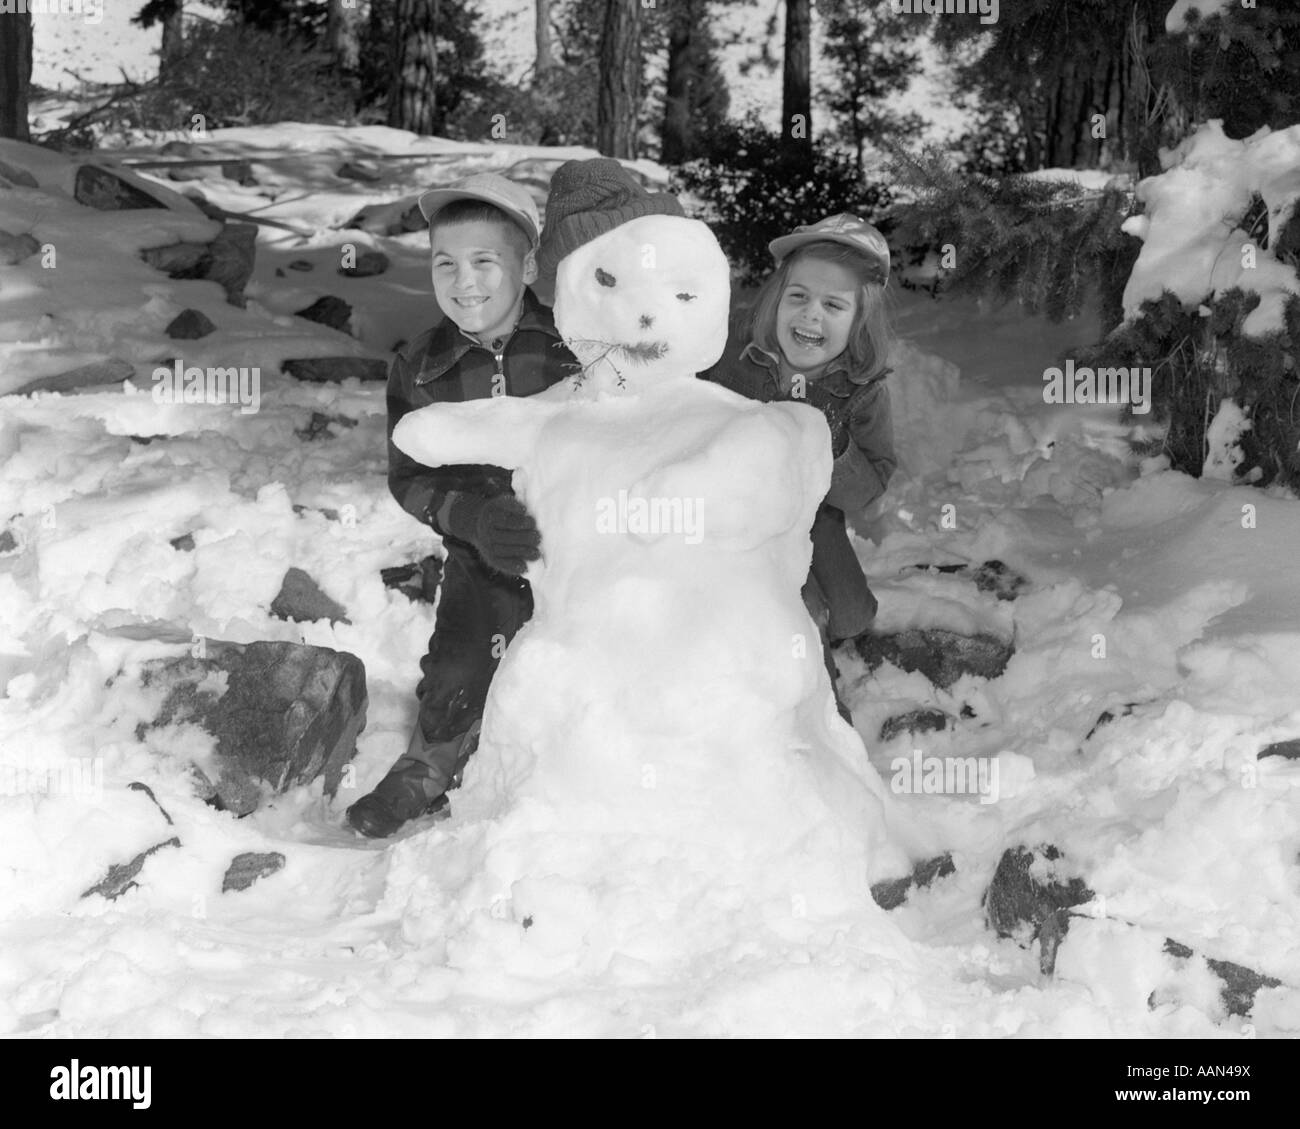 Années 1950 Années 1960 SMILING BOY AND GIRL UN BONHOMME ENSEMBLE DANS SNOWY WOODS Banque D'Images